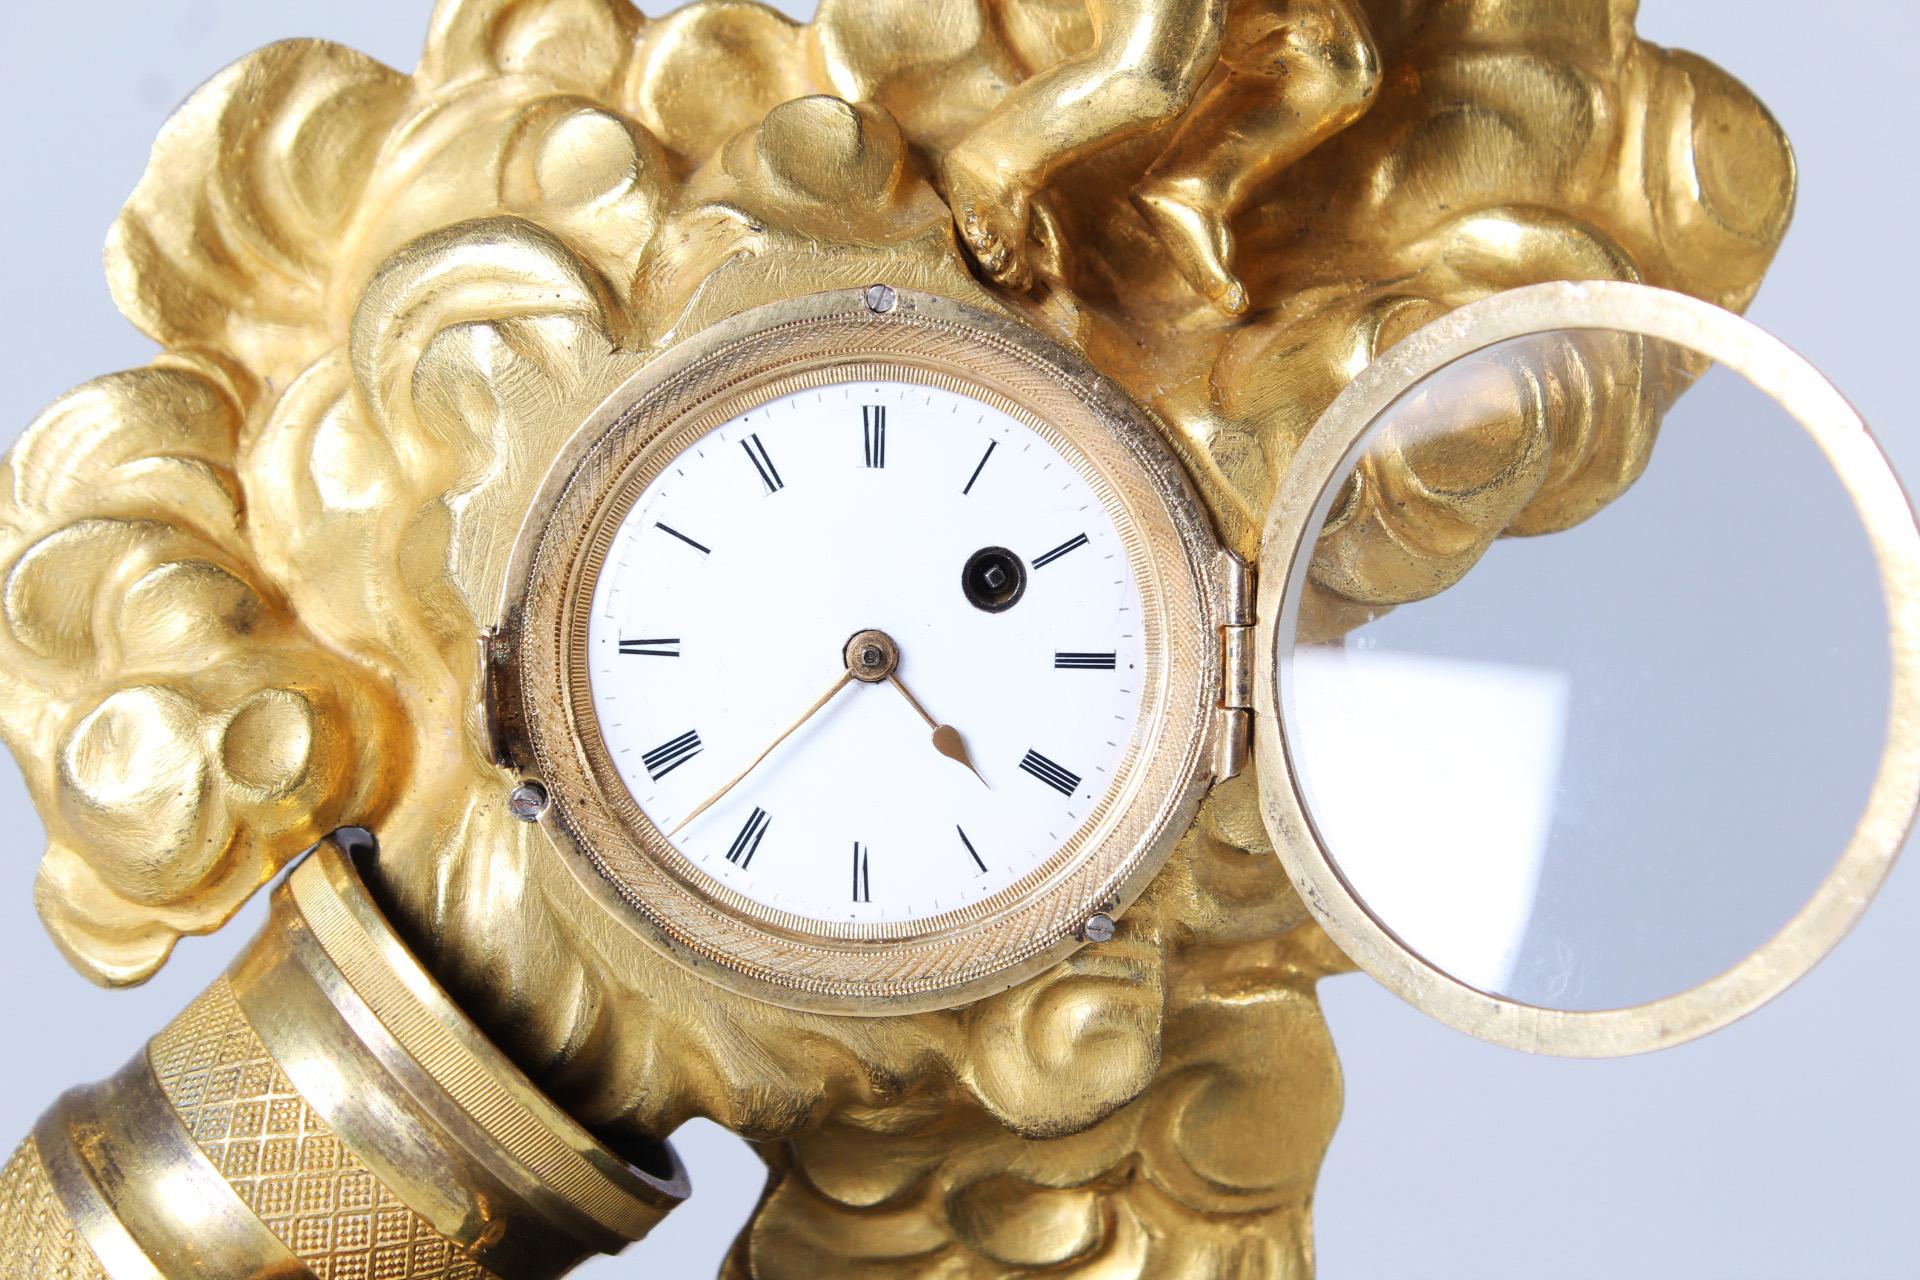 19th Century Miniatur Mantel Clock, Gare La Bombe, Cupido, France, Gilded Bronze In Good Condition For Sale In Greven, DE